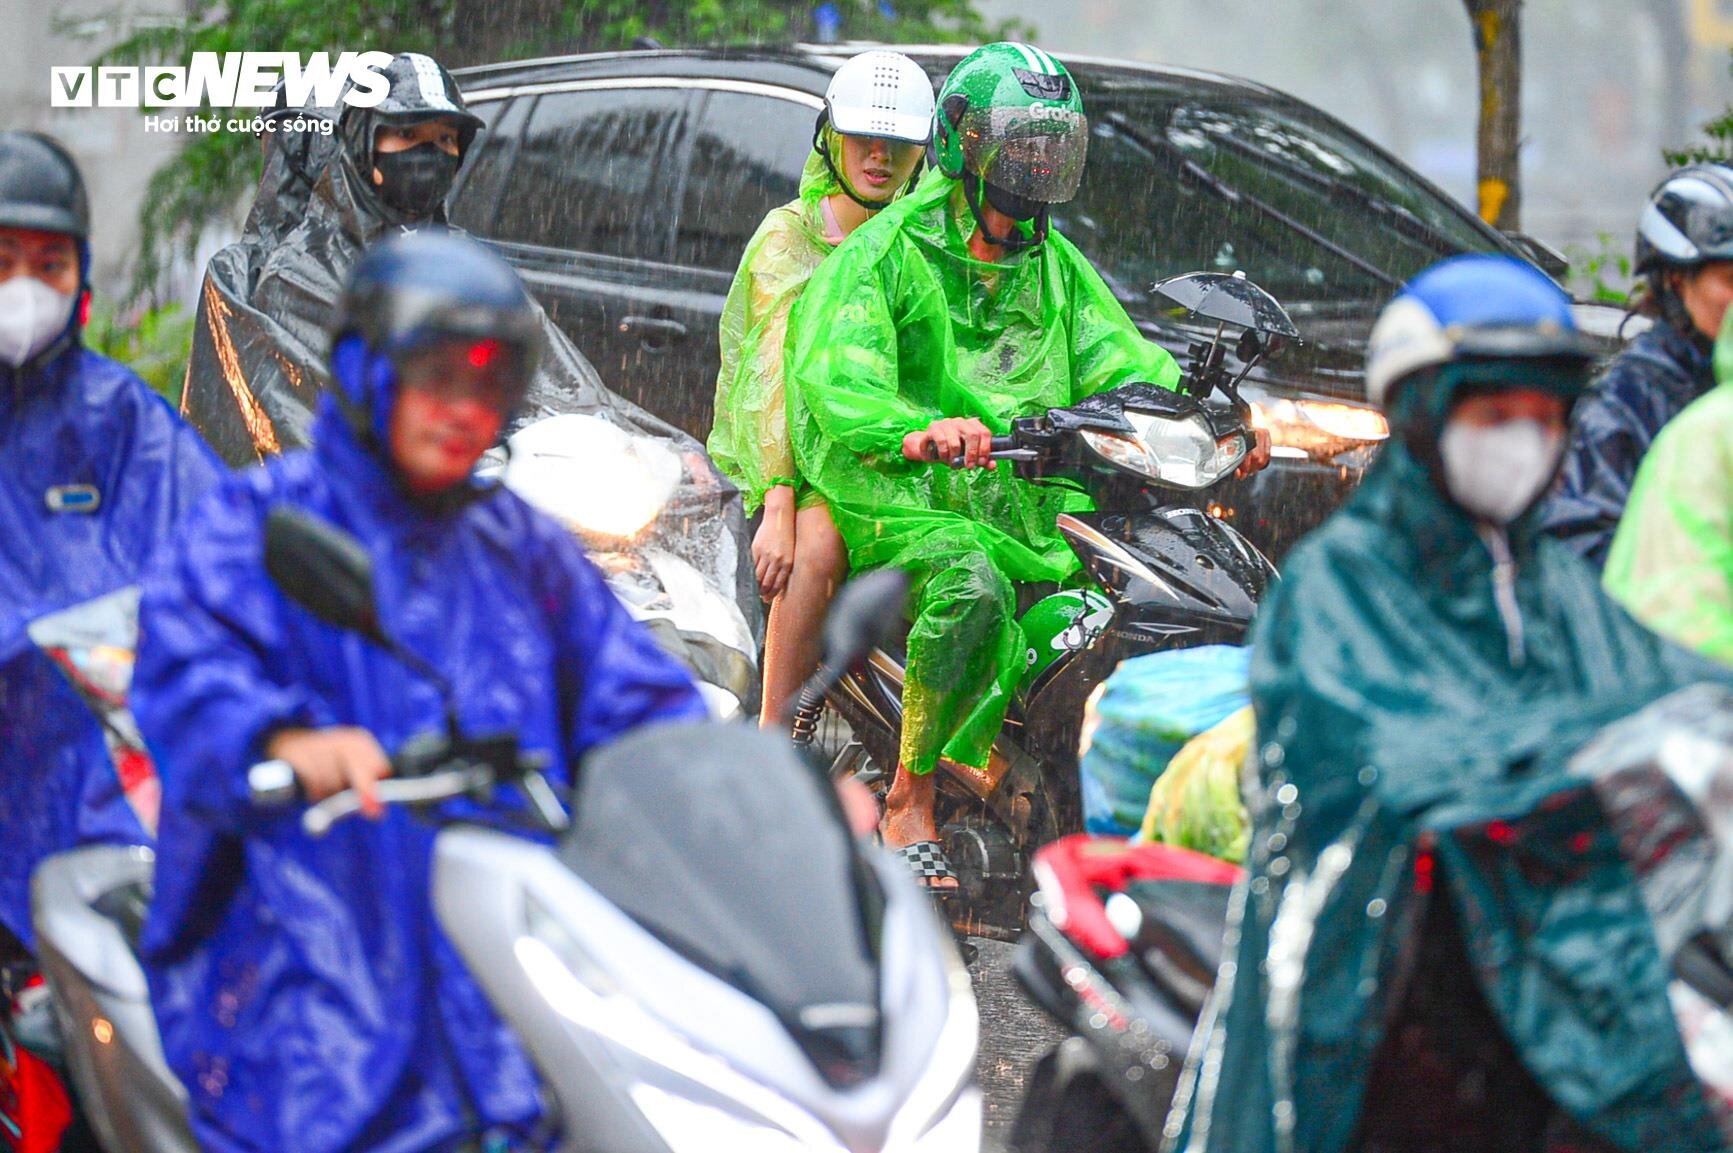 Giao thông Hà Nội hỗn loạn trong cơn mưa như trút nước - Ảnh 5.